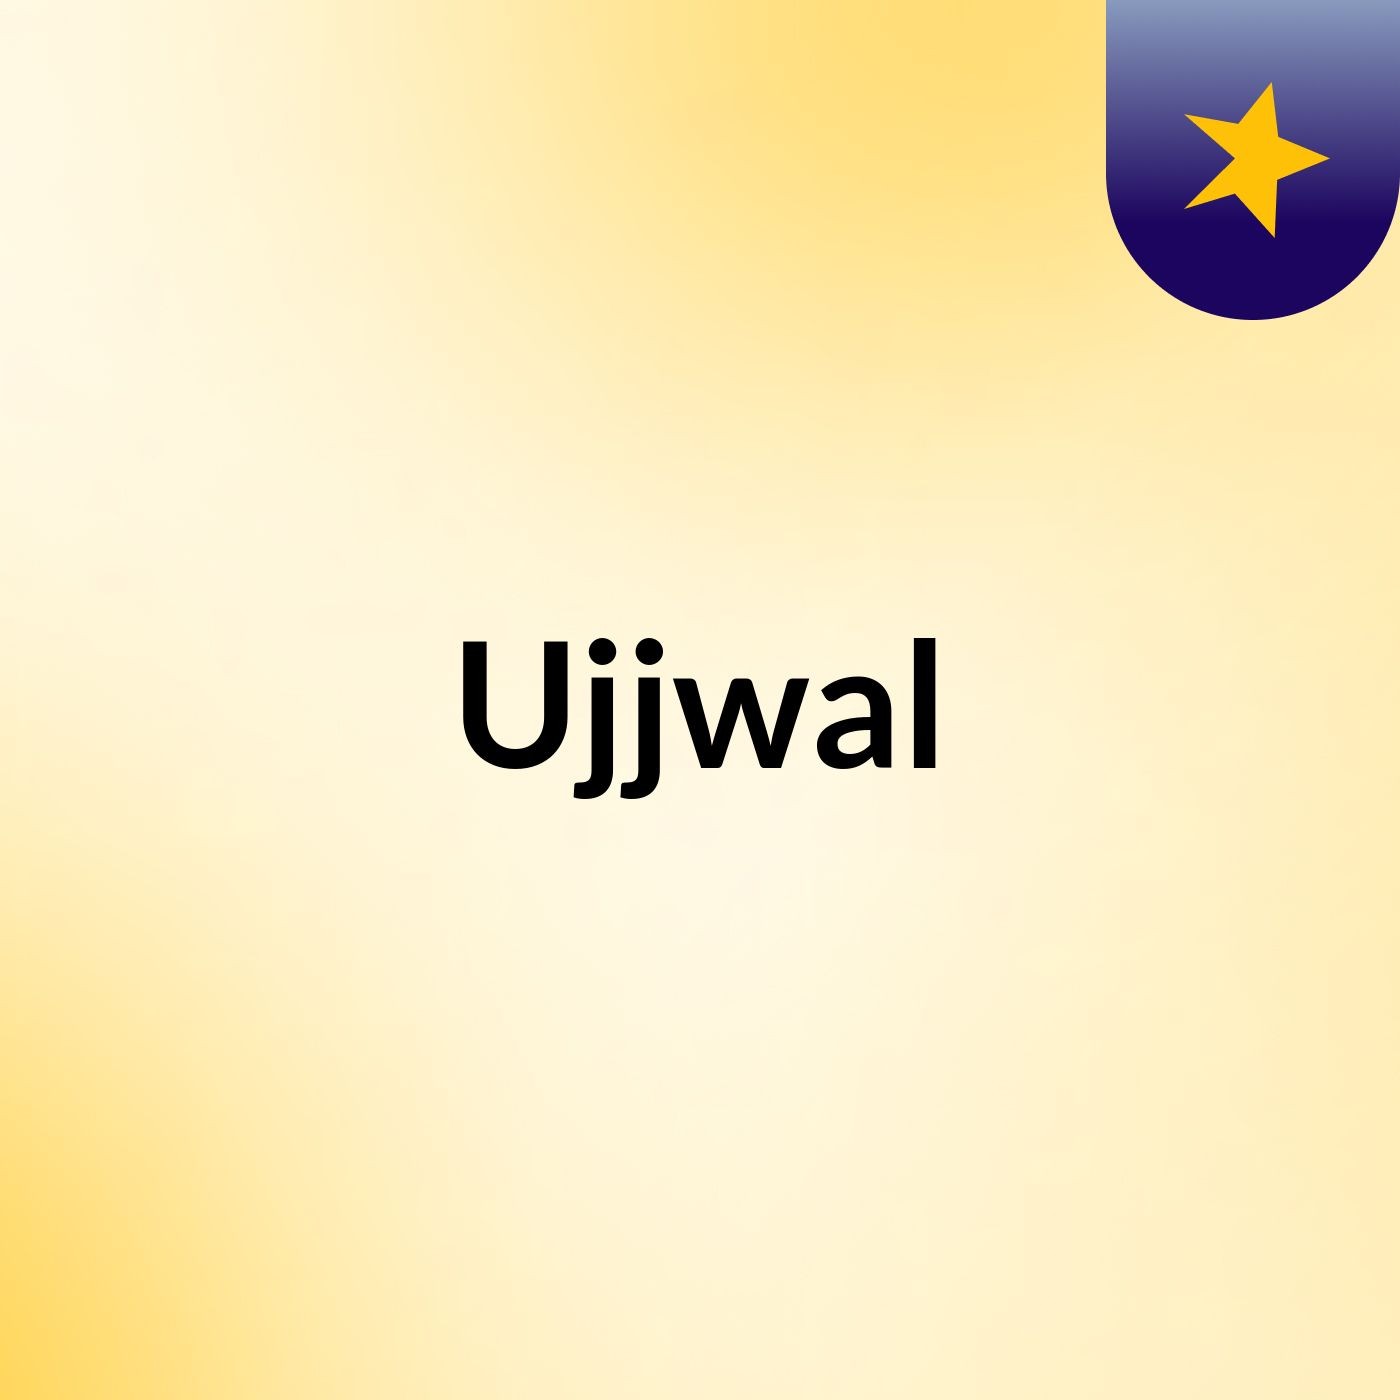 Ujjwal